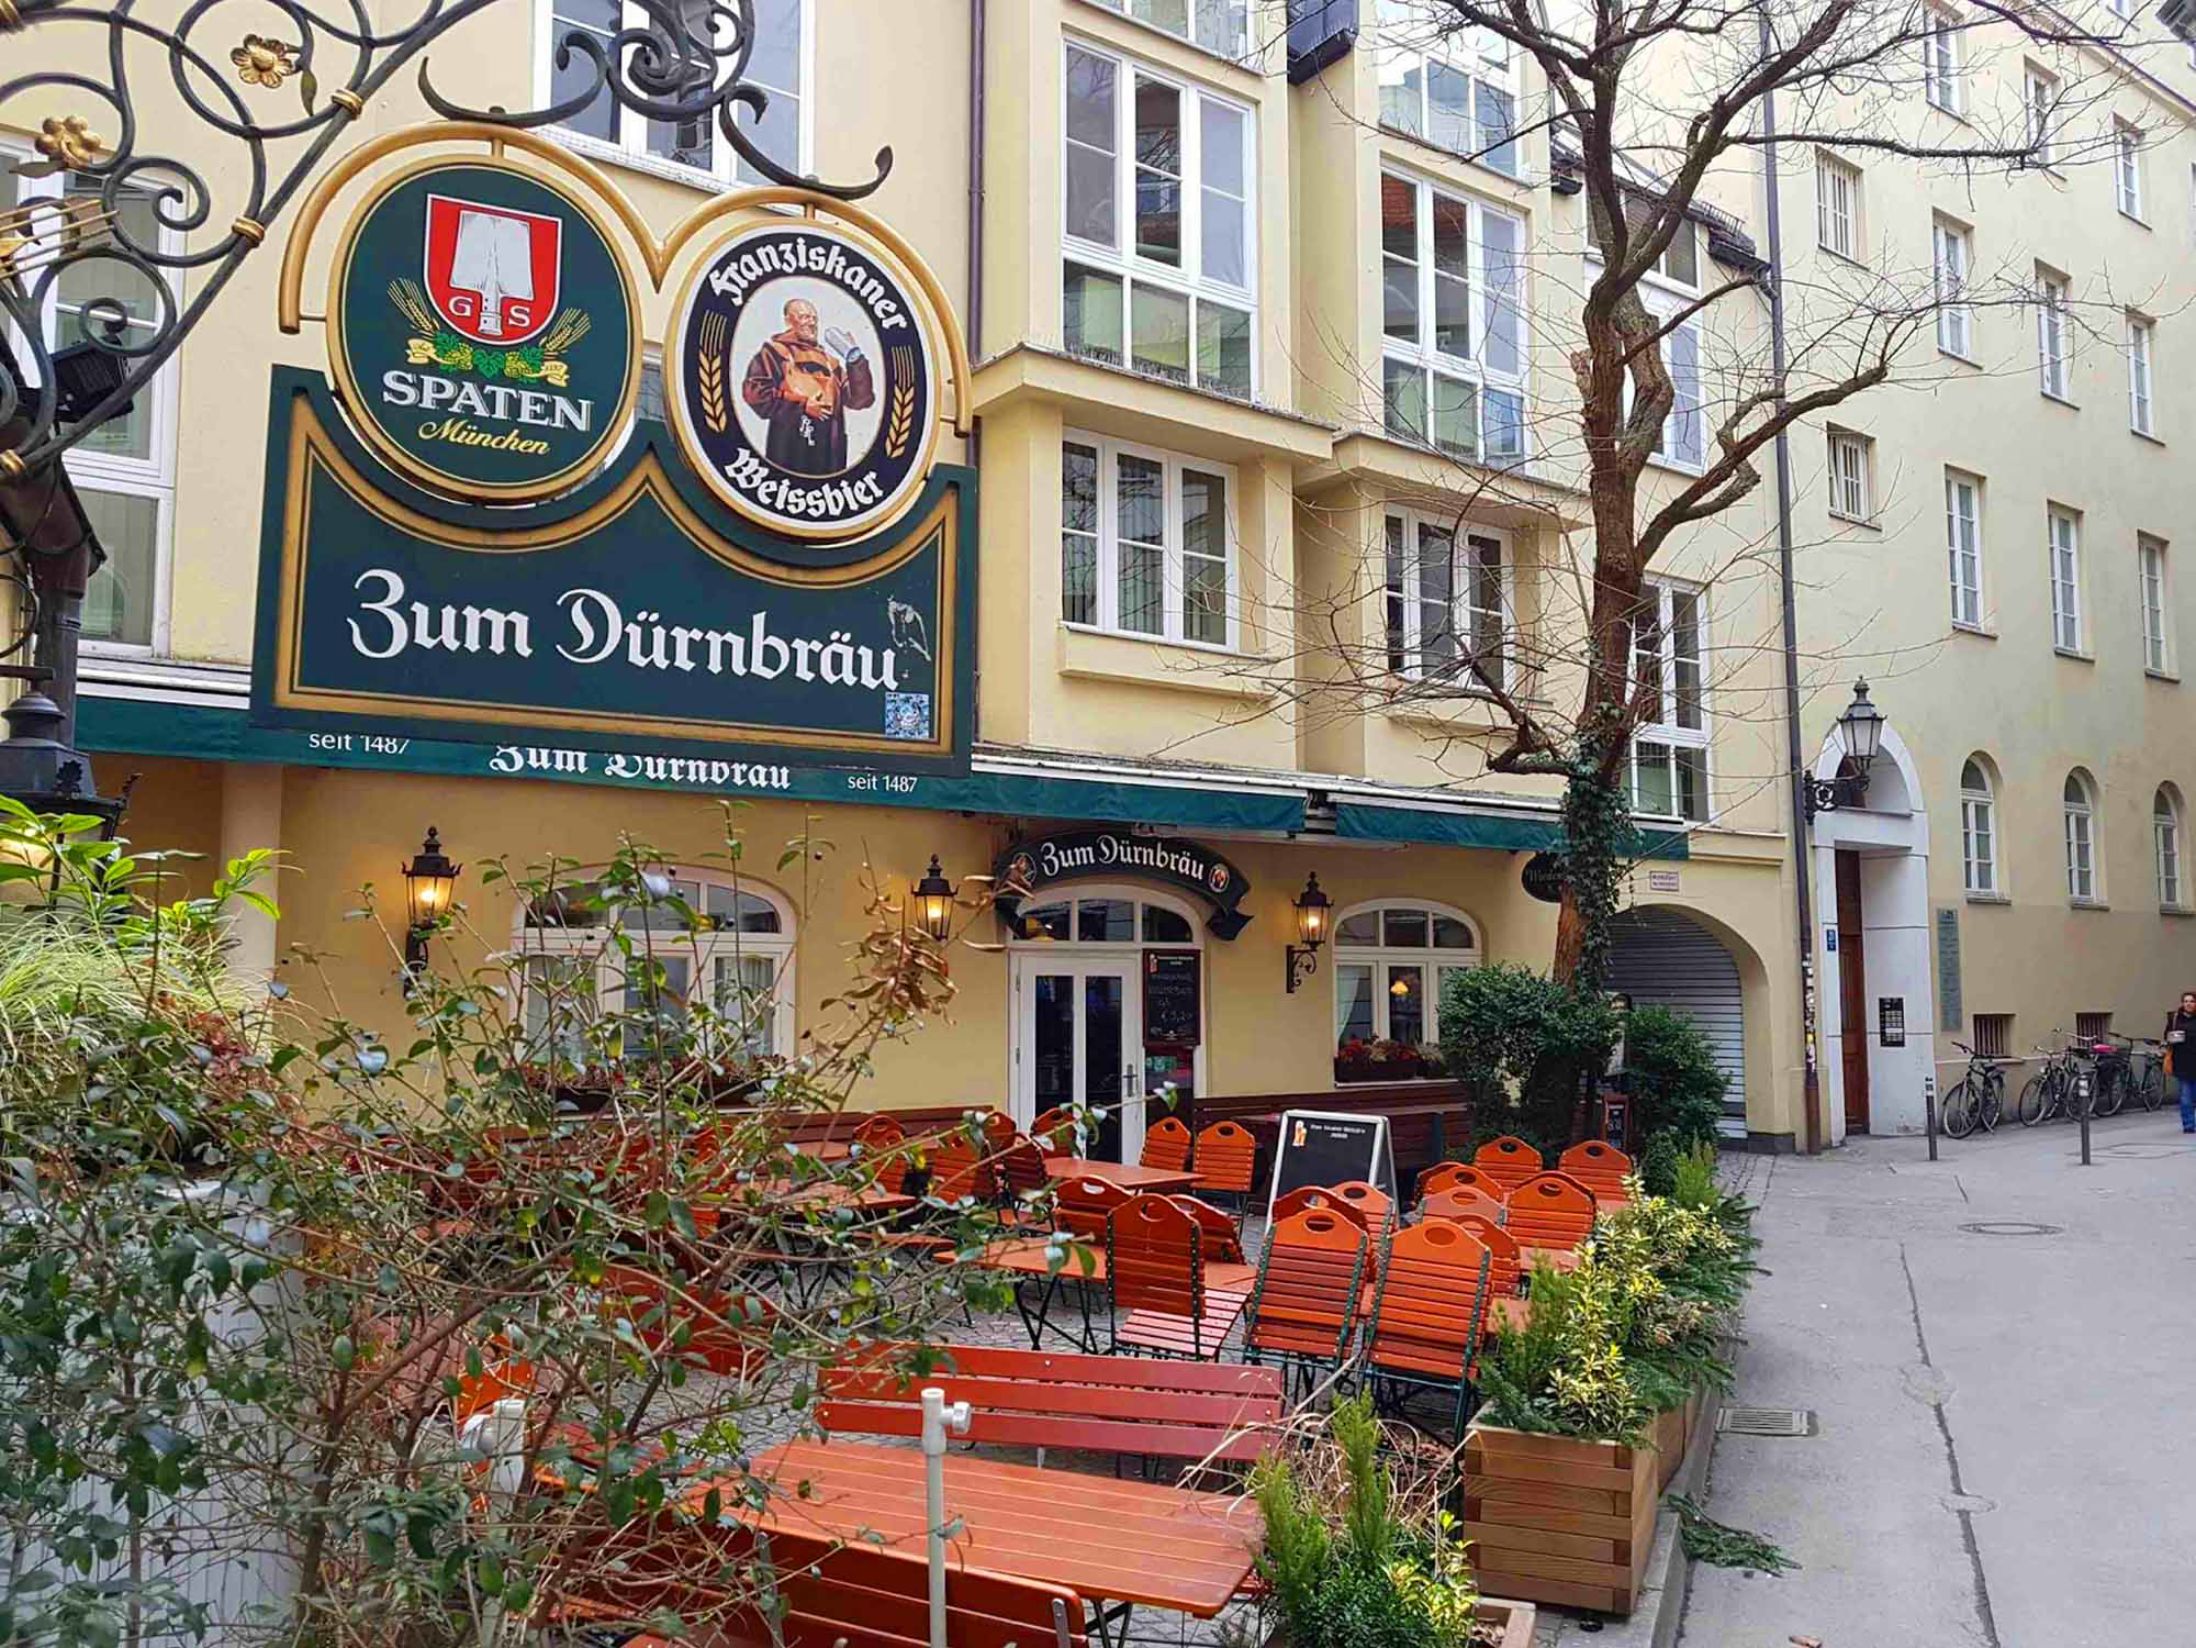 Zum Dürnbräu - Best Bars in Munich